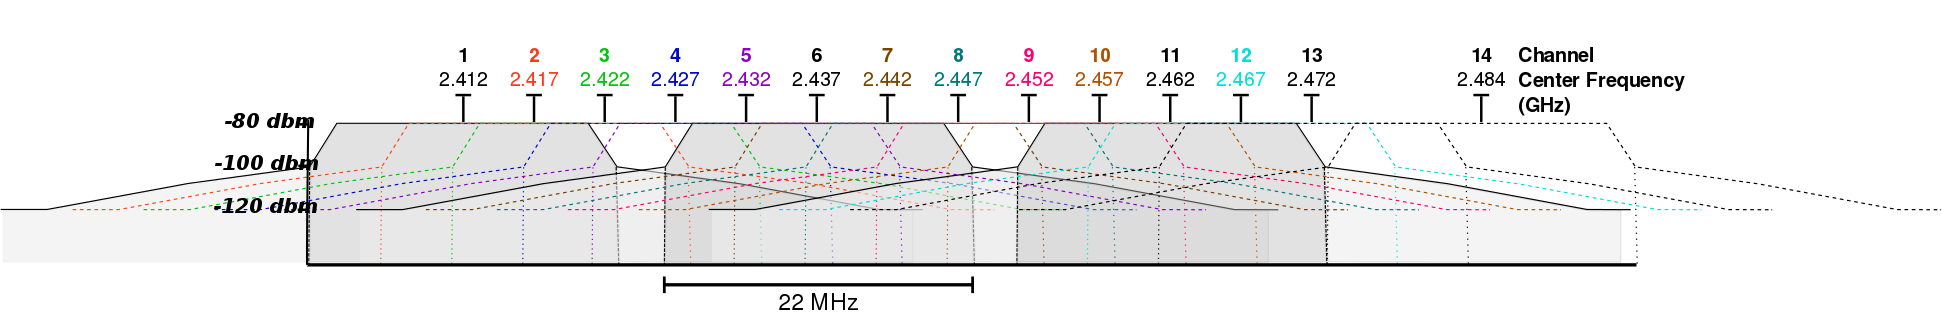 图 1-6 IEEE 802.11g 第1-14信道的频谱屏蔽范围定义